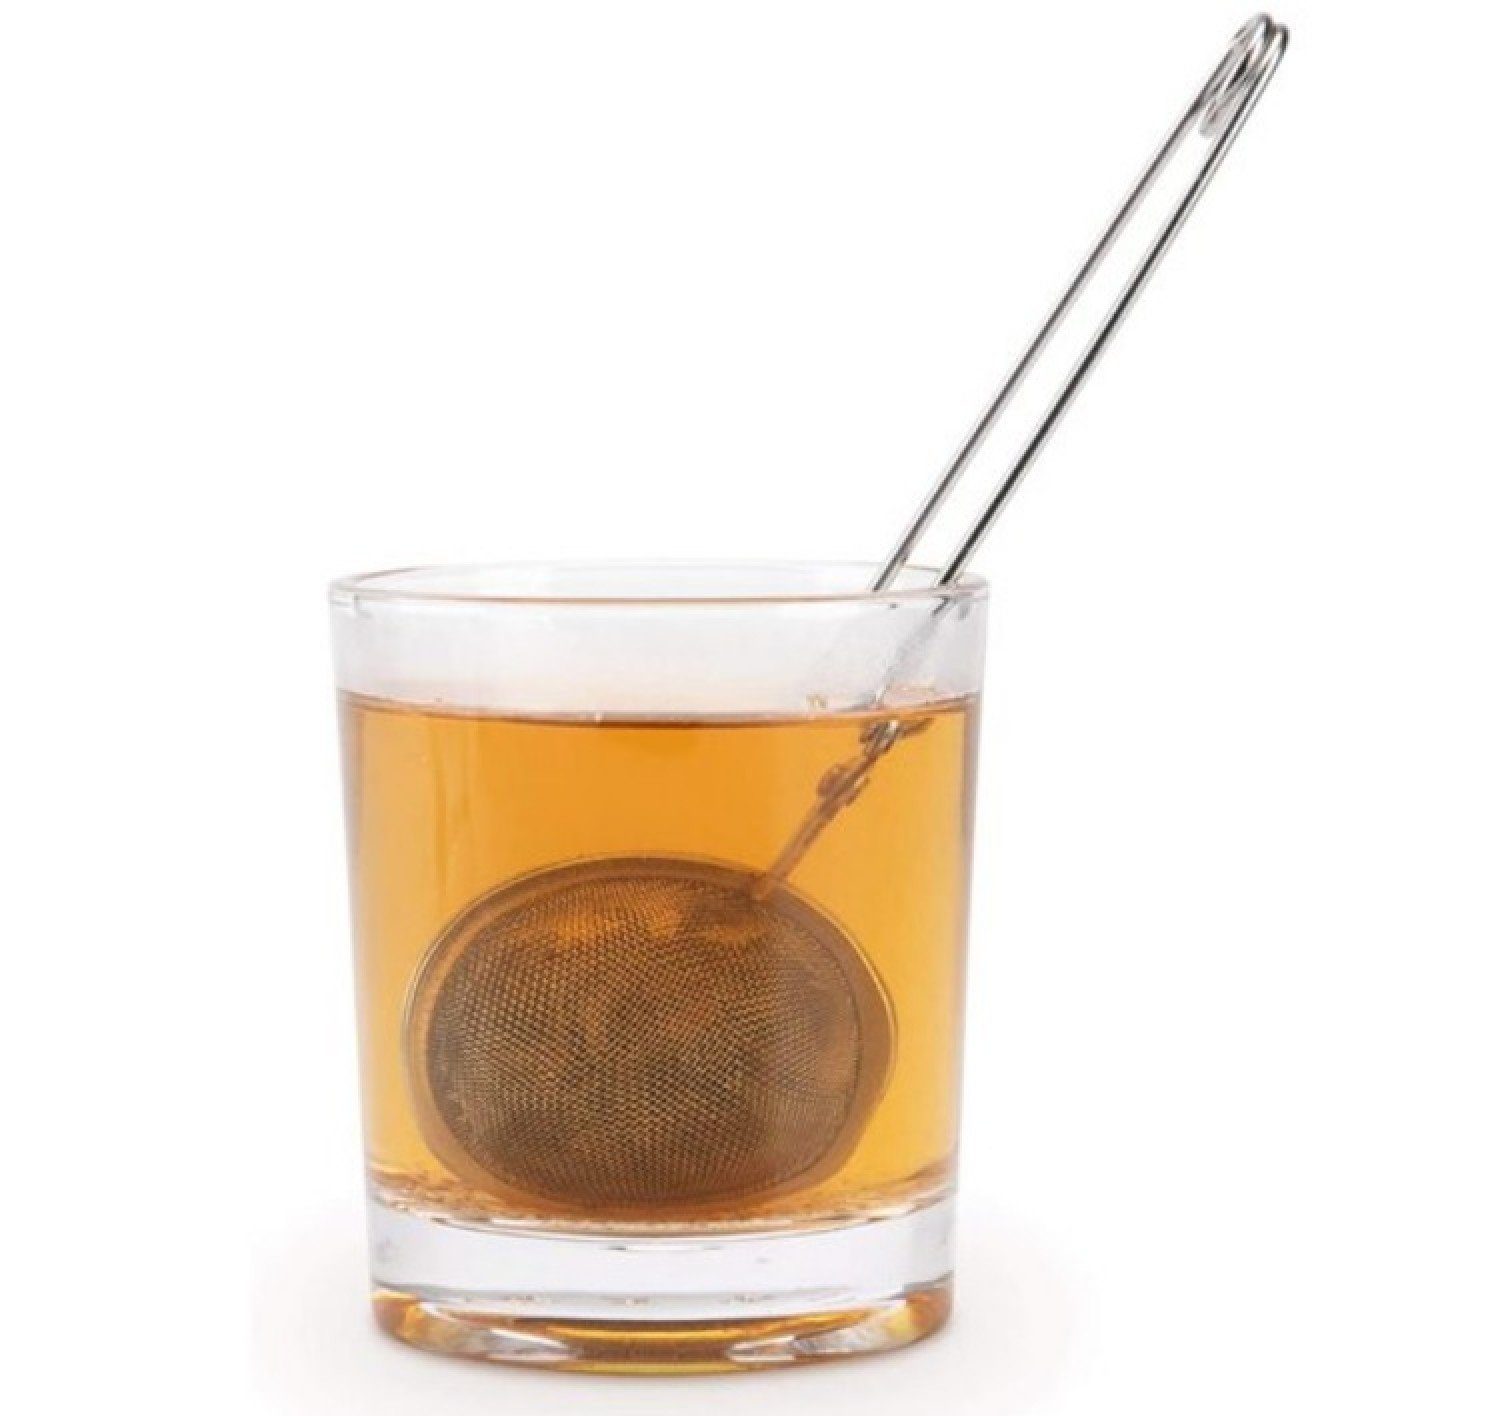 BAYLI Teesieb 13 Stück Teezange Teeklammer Blätter Edelstahl, Set 13er für aus lose